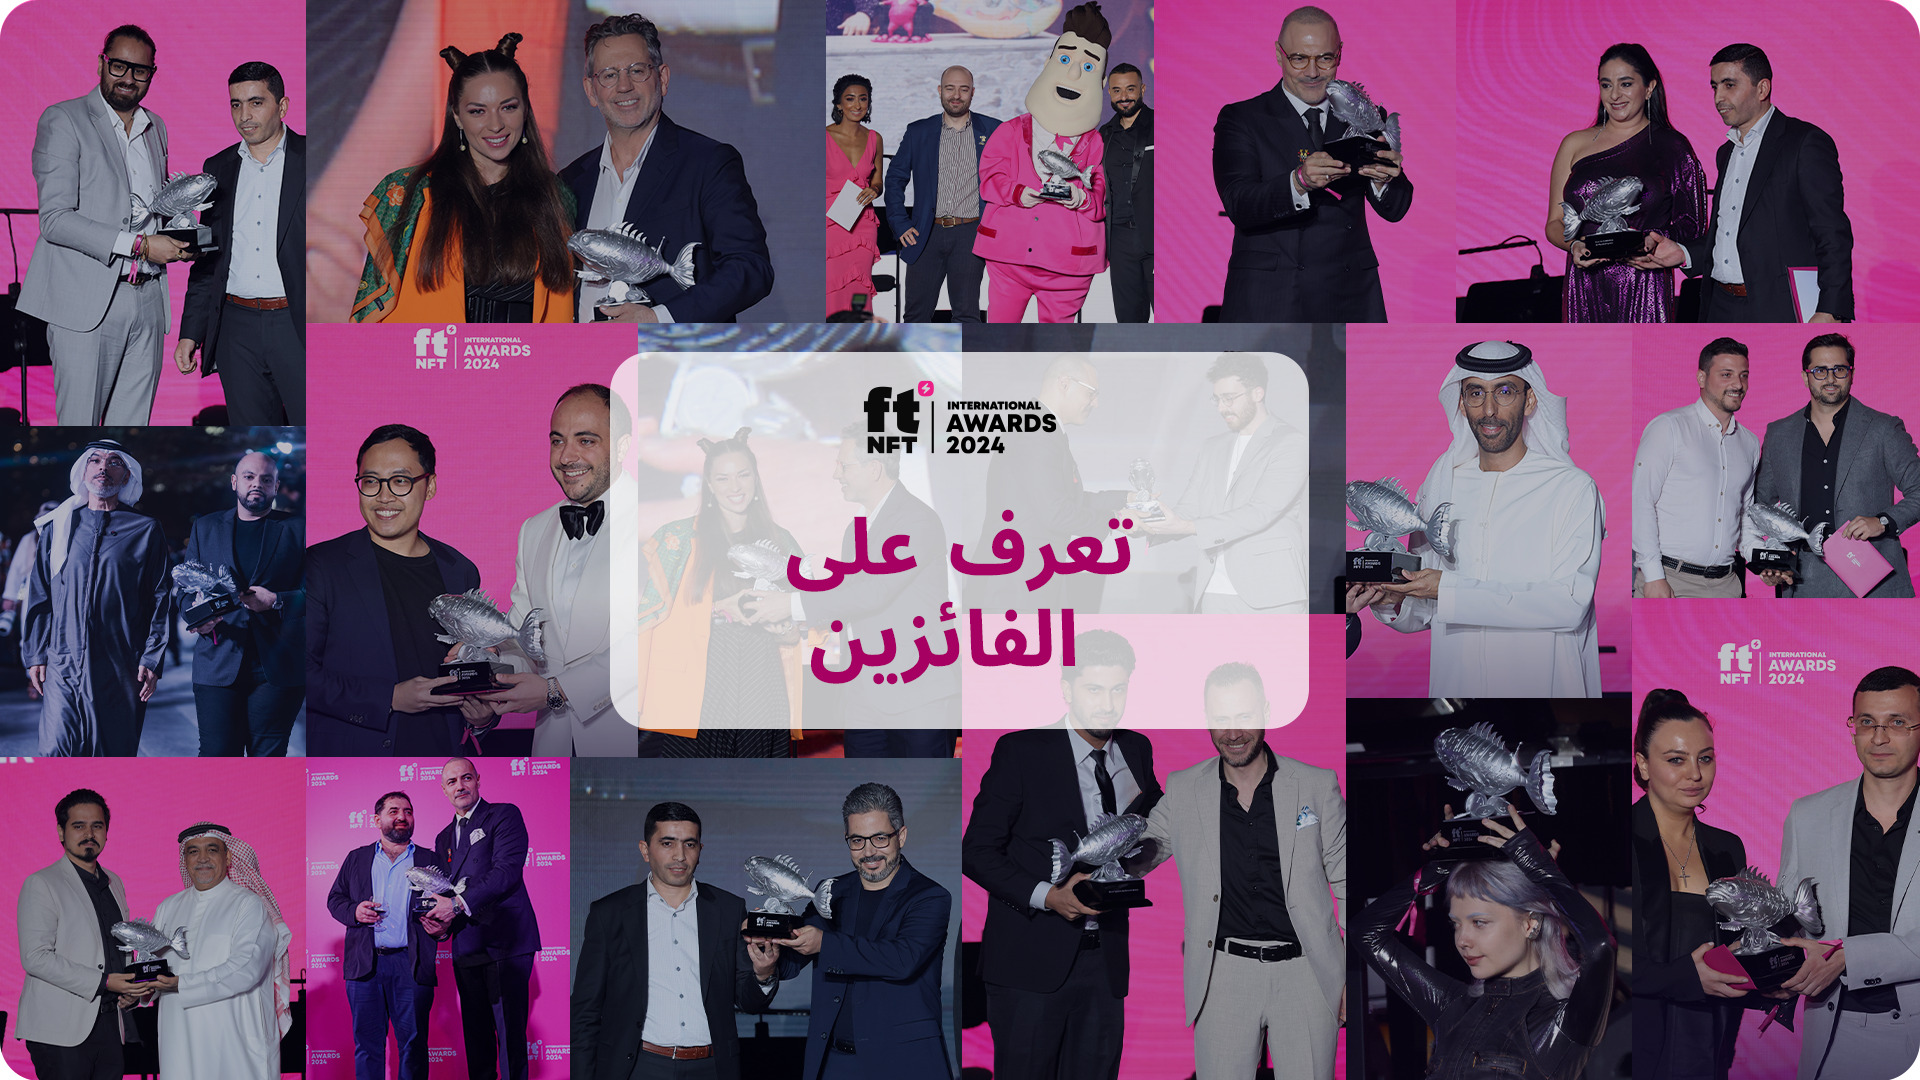 تعلن جوائز ftNFT الدولية 2024 عن الفائزين في حفل ساحر في دبي